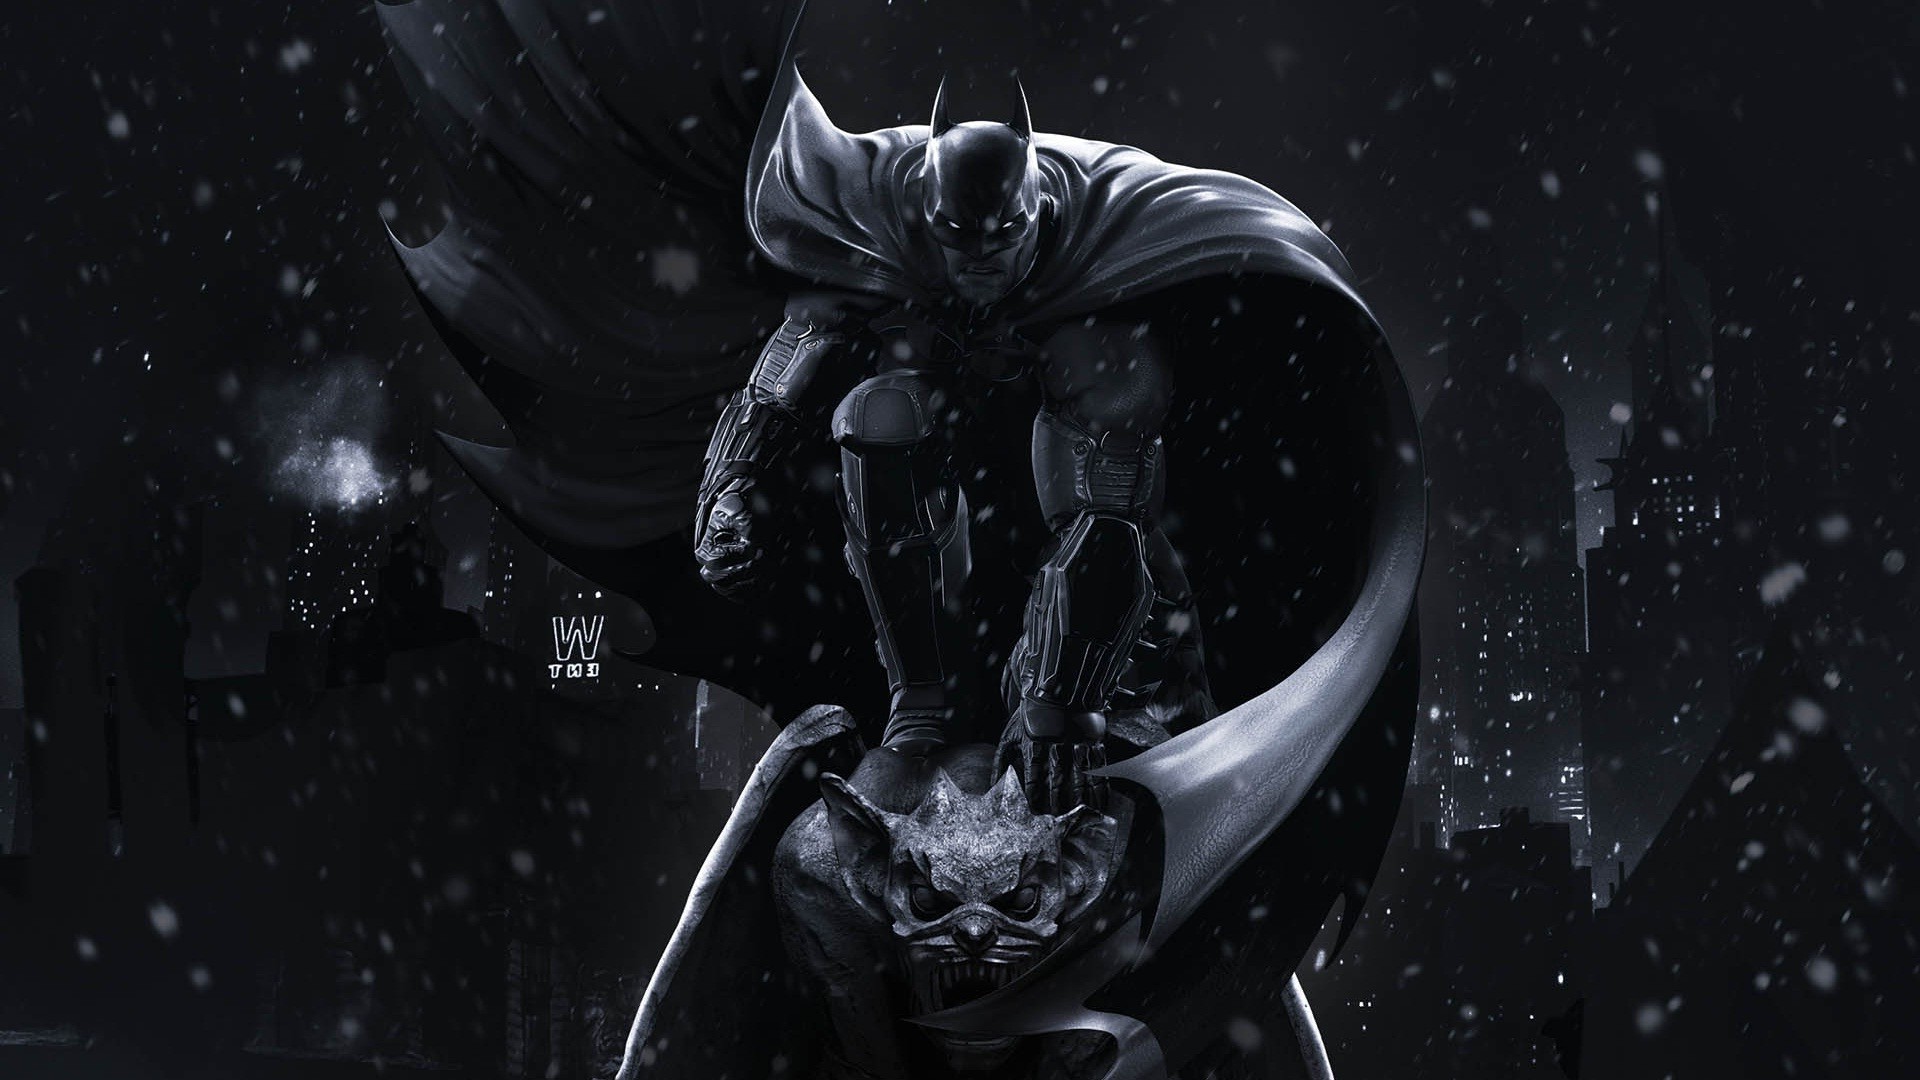 Batman, DC Comics Wallpaper